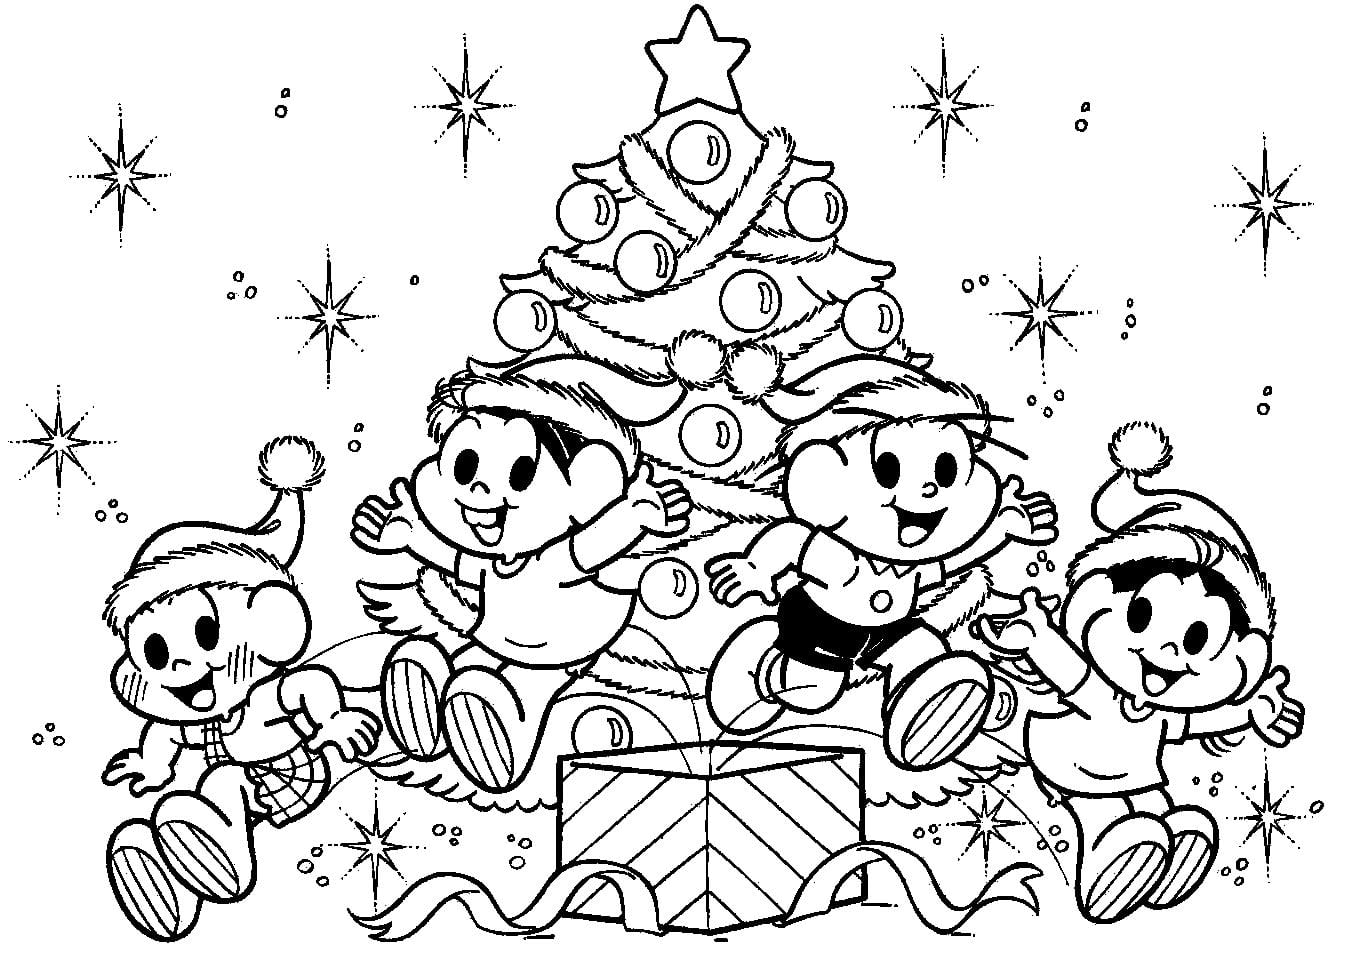 Desenho De Turma Da Monica Em Linda Noite De Natal Para Colorir